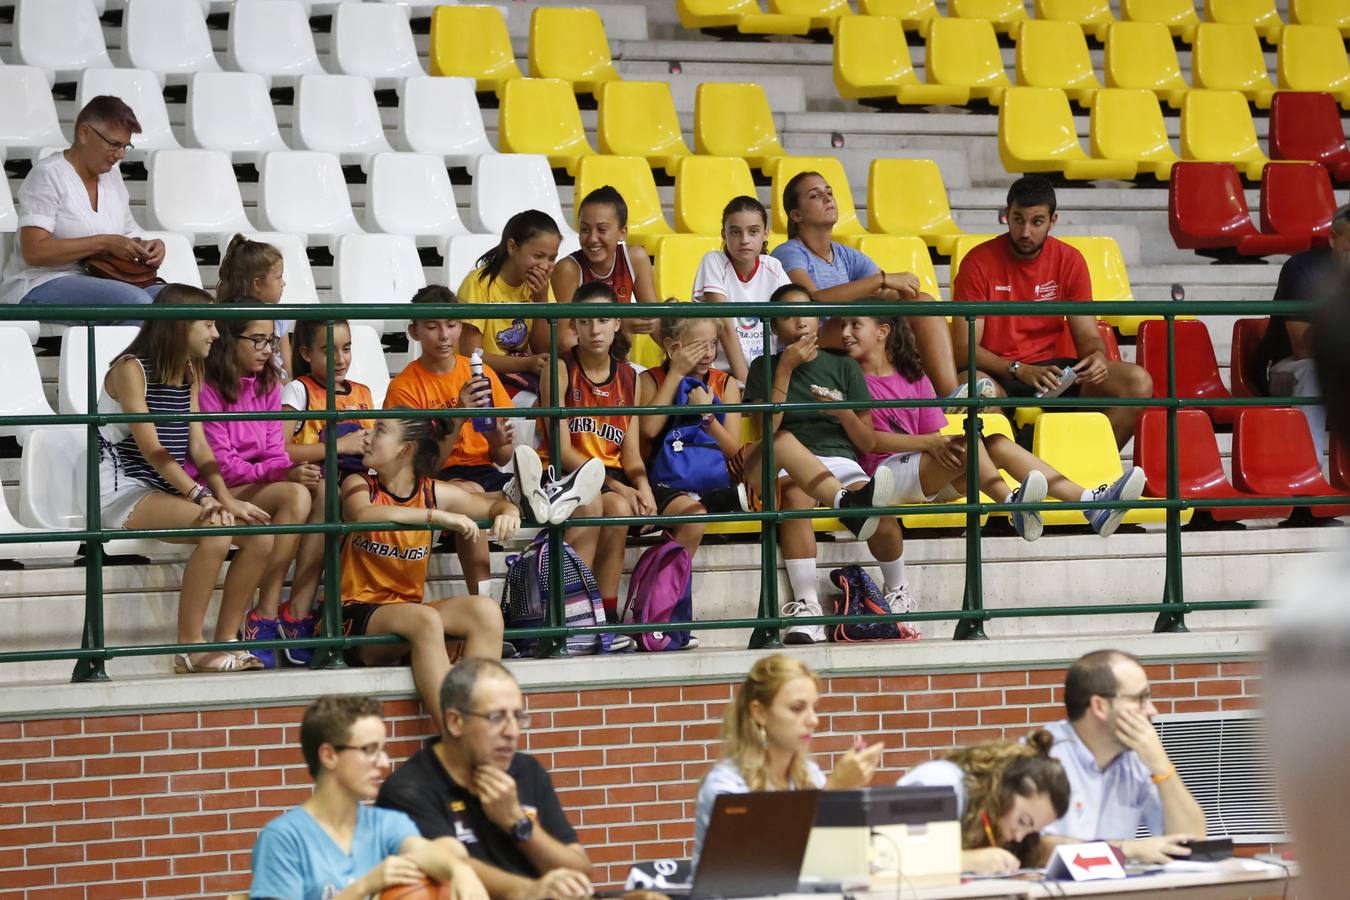 El equipo salmantino se impone en un igualado encuentro al Agustinos Eras de León (79-73)